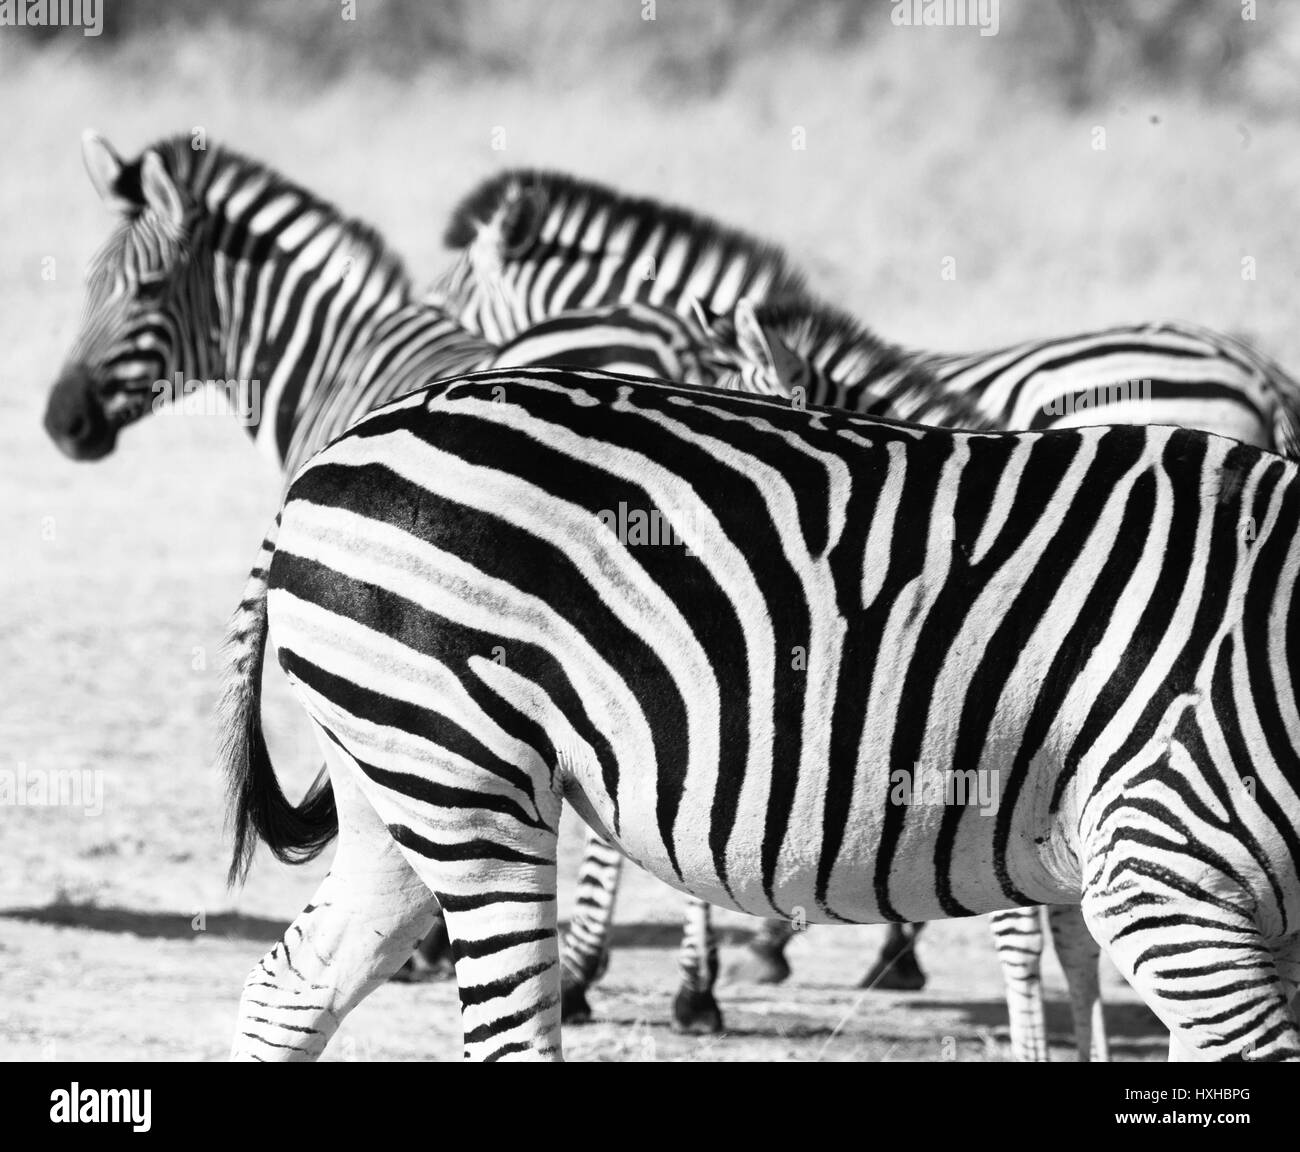 Zebra in black and white in Botswana, Africa Stock Photo